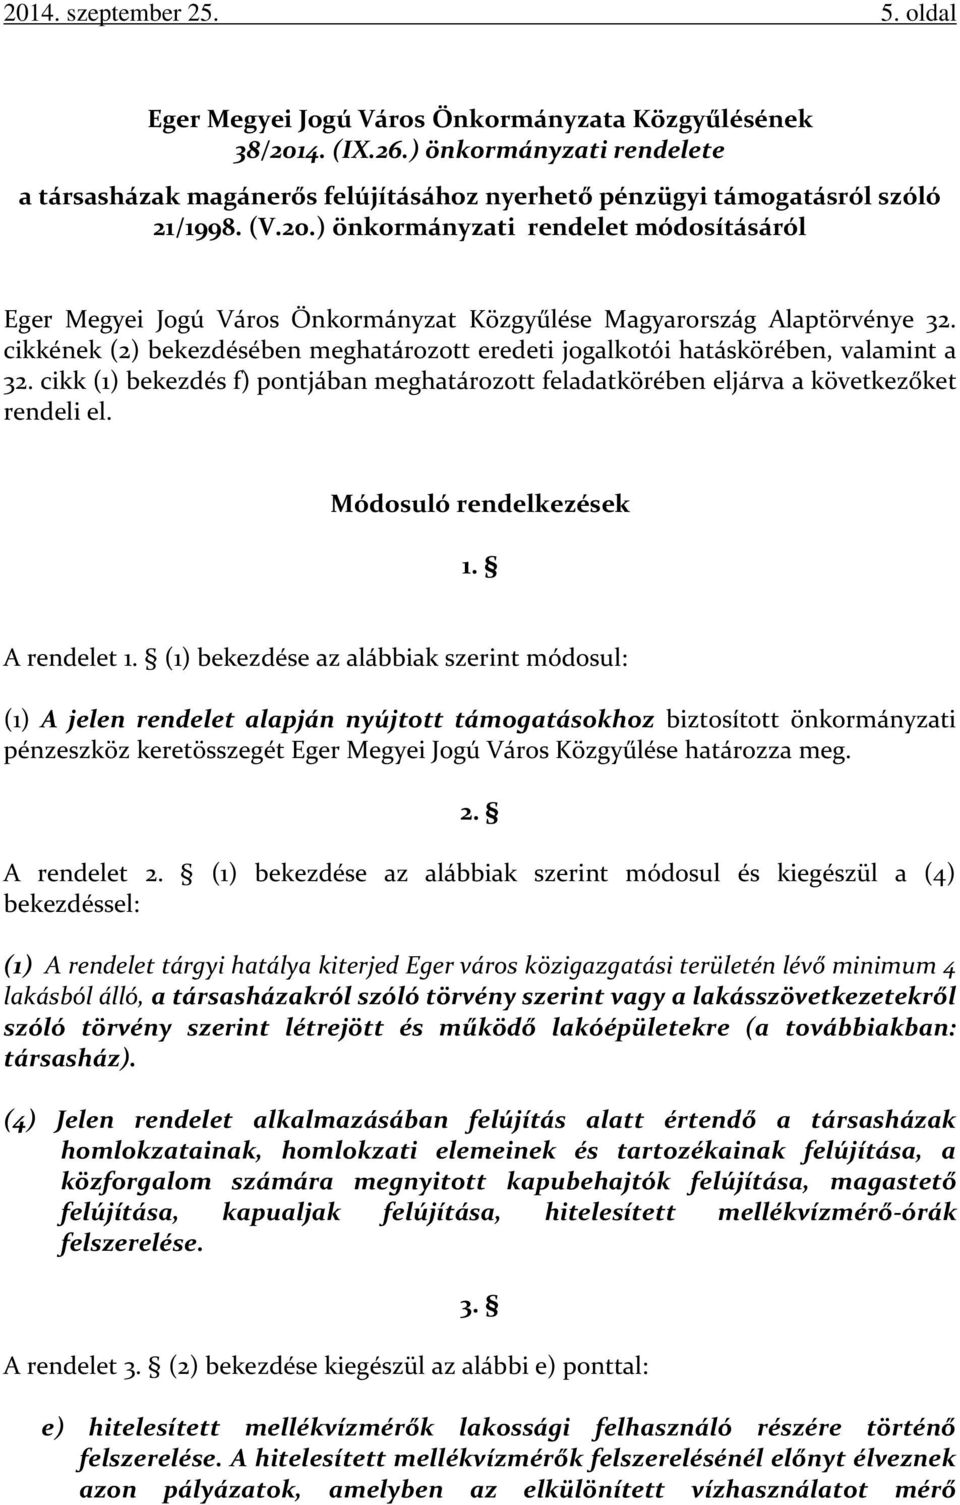 ) önkormányzati rendelet módosításáról Eger Megyei Jogú Város Önkormányzat Közgyűlése Magyarország Alaptörvénye 32.